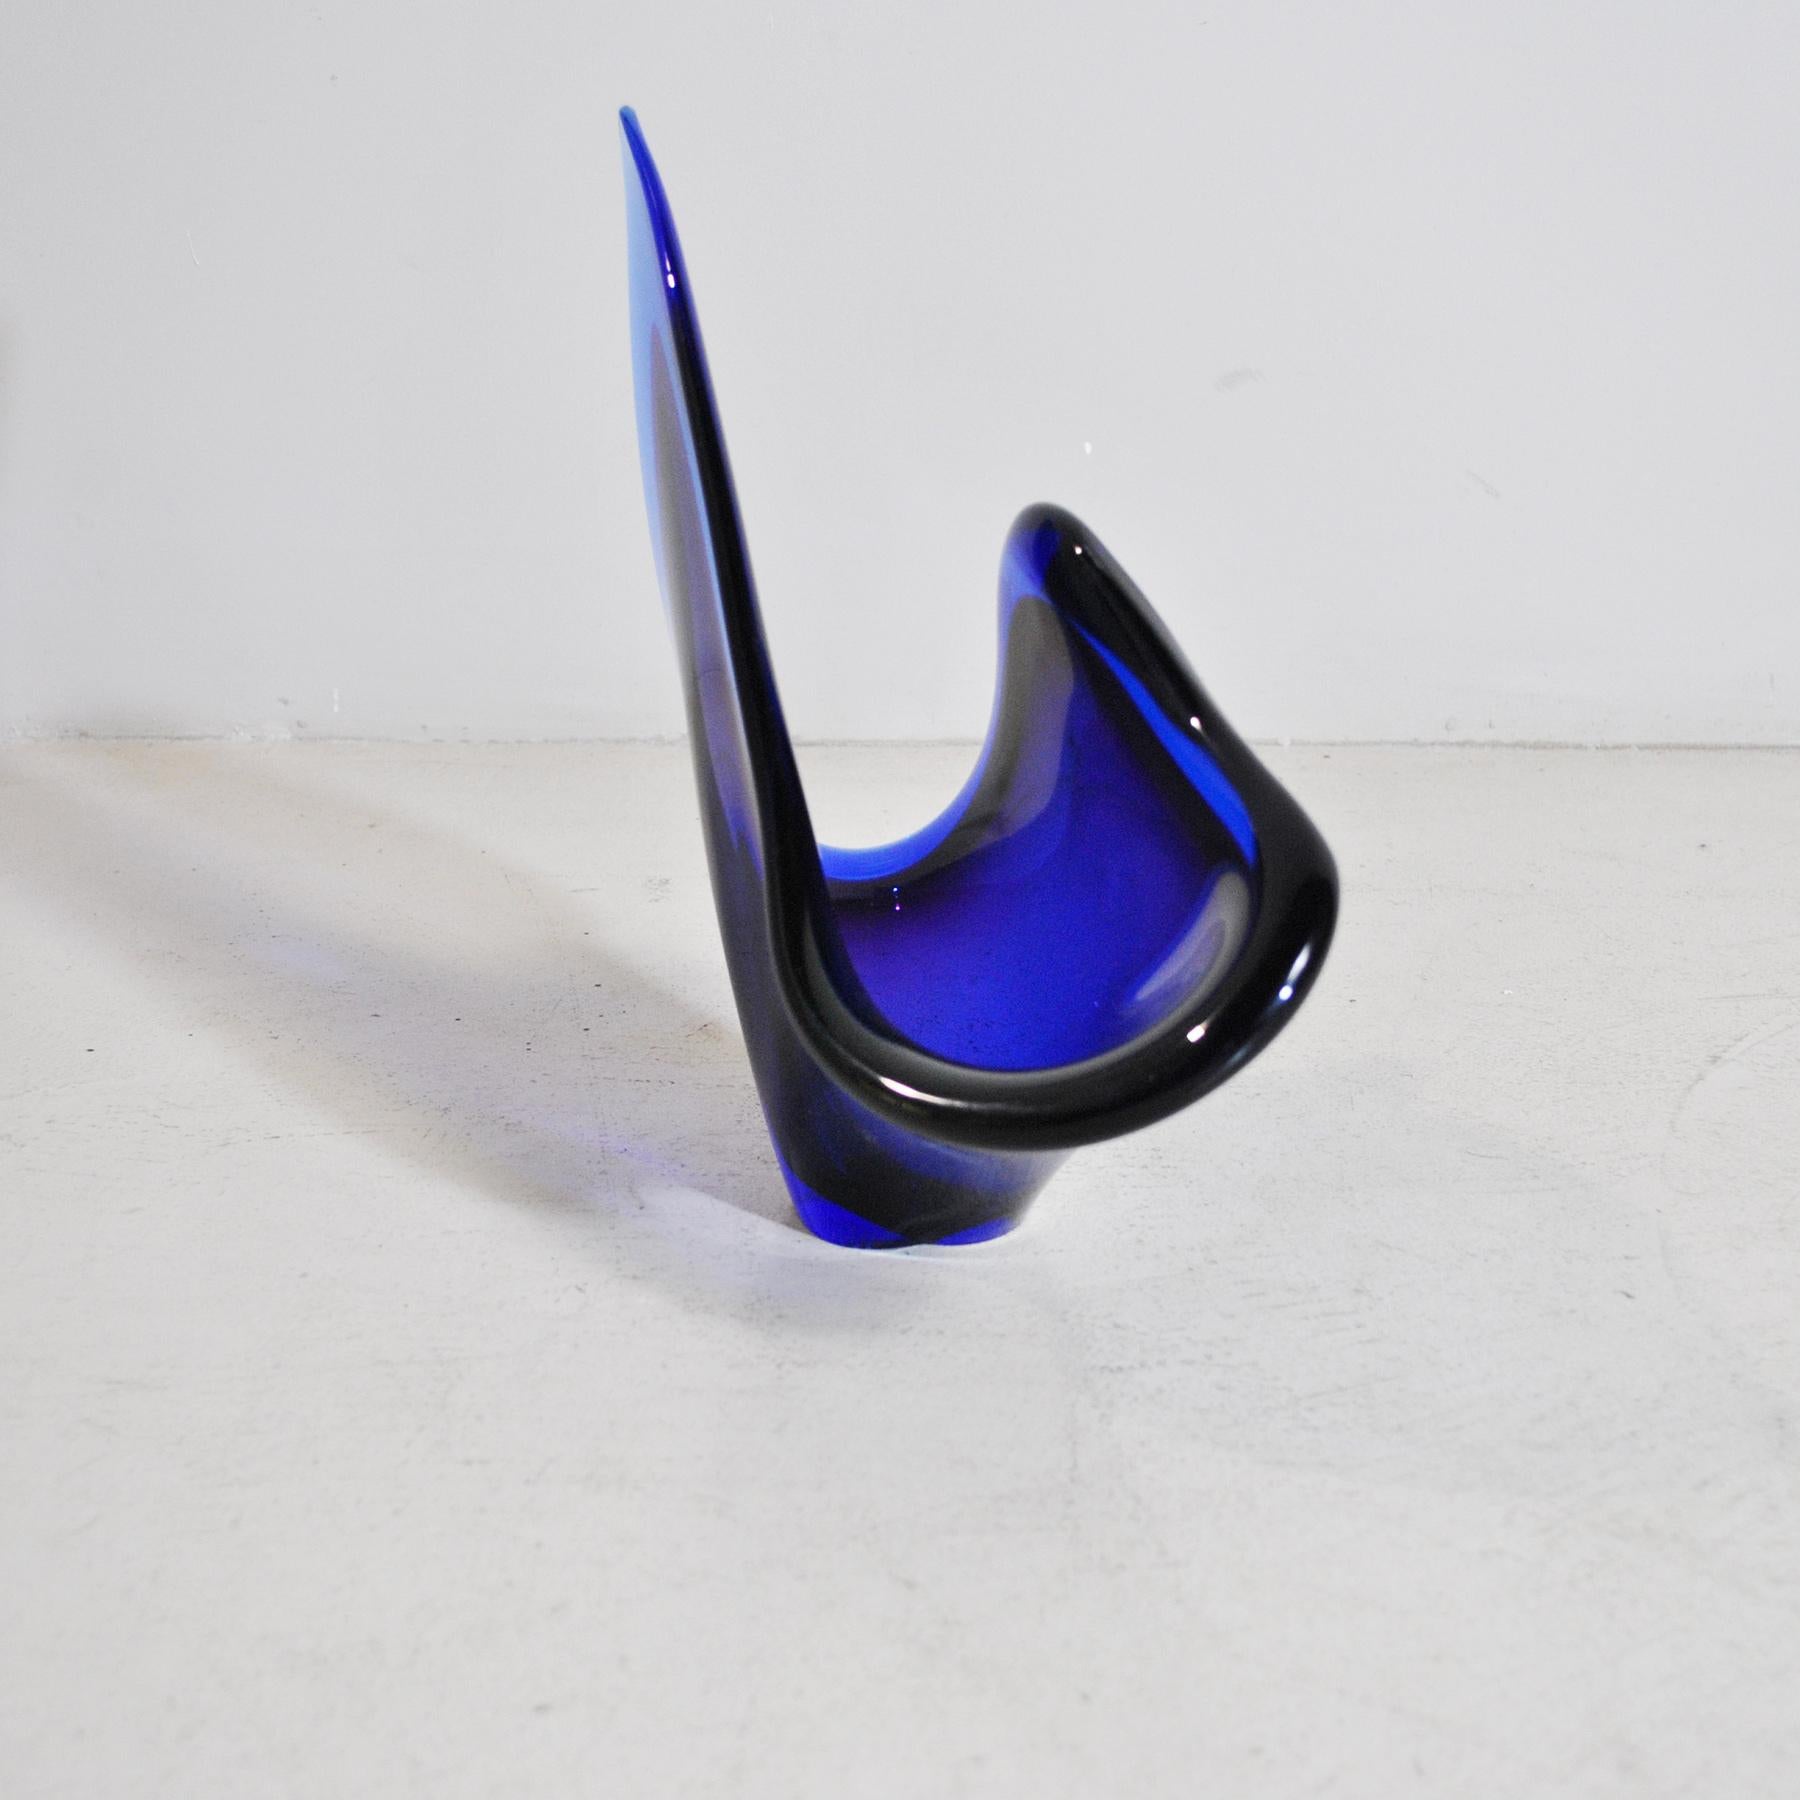 Italian Vetri d'Arte Seguso Glass Art by Flavio Poli In Good Condition For Sale In bari, IT